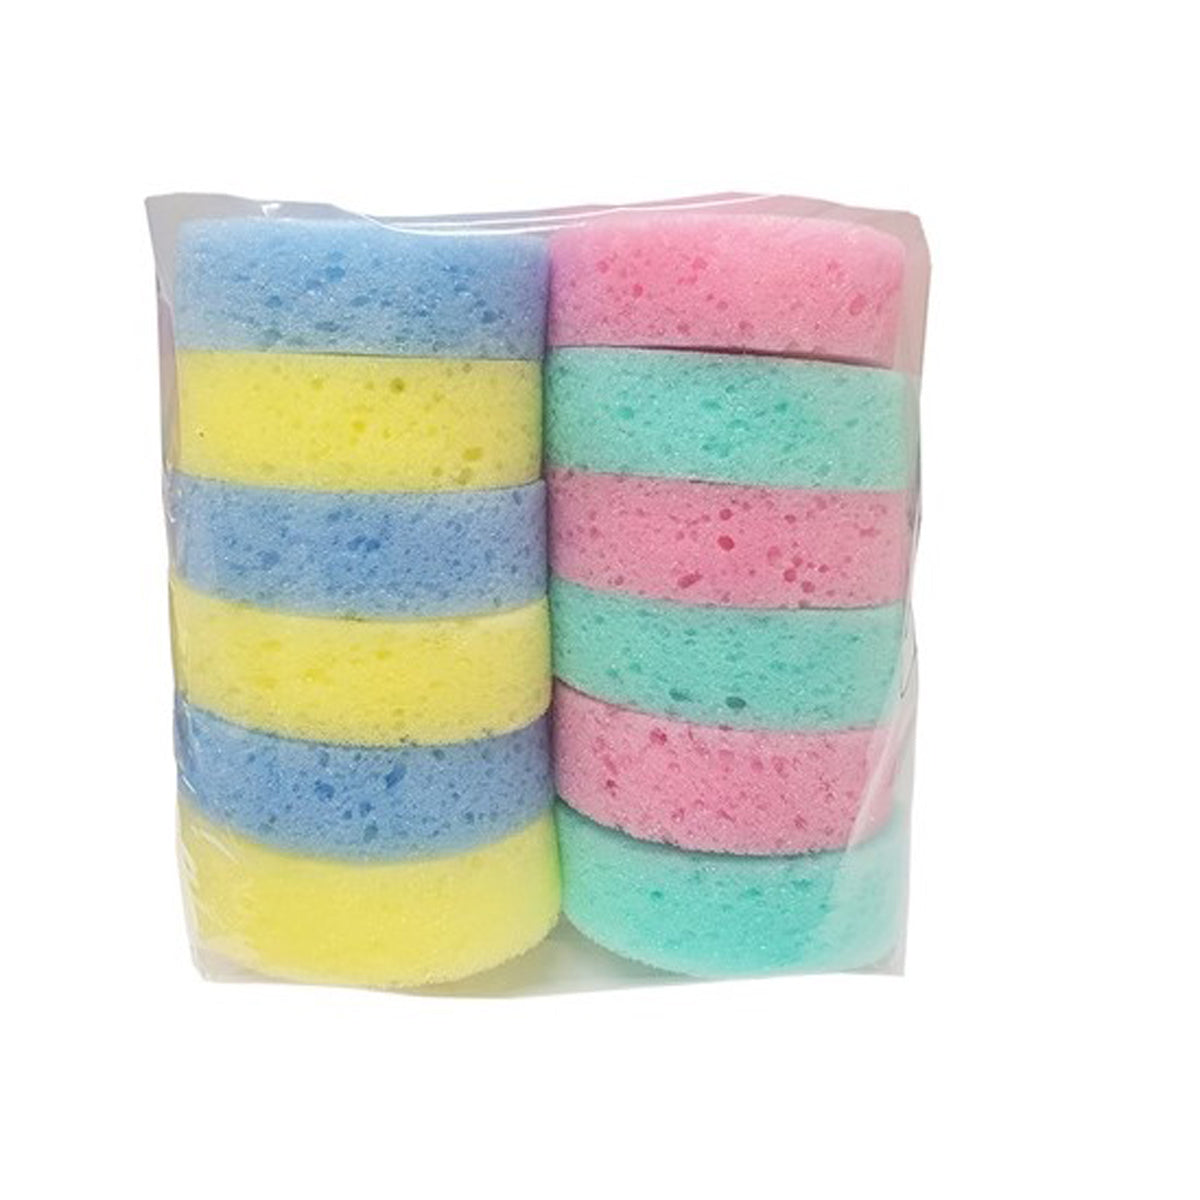 Rainbow Tack Sponges